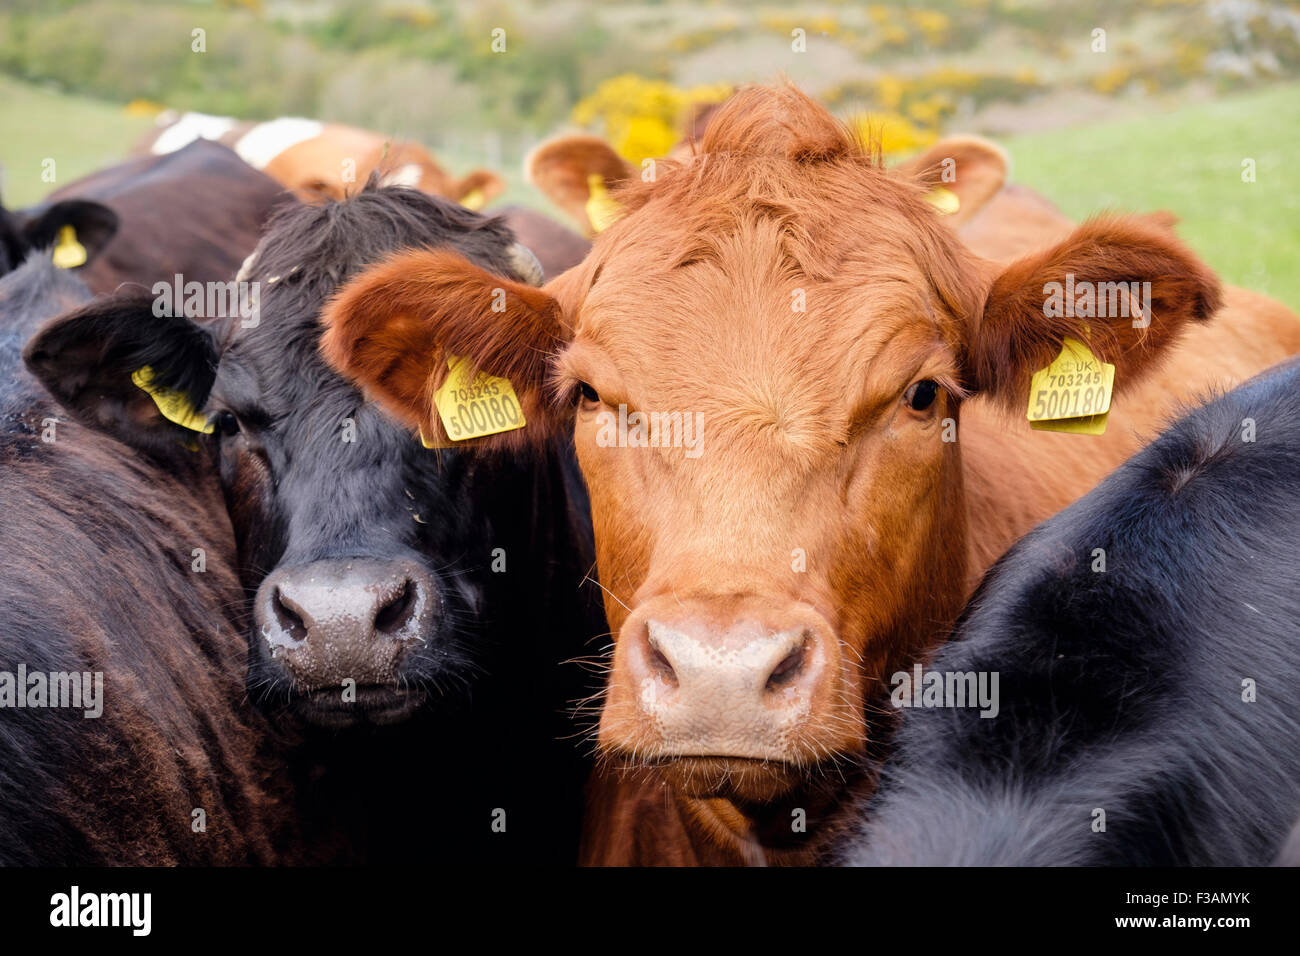 Neugierige junge Stiere Bos taurus (Rinder) mit gelben Ohrmarken auf einem Bauernhof. Wales, Großbritannien, Großbritannien Stockfoto